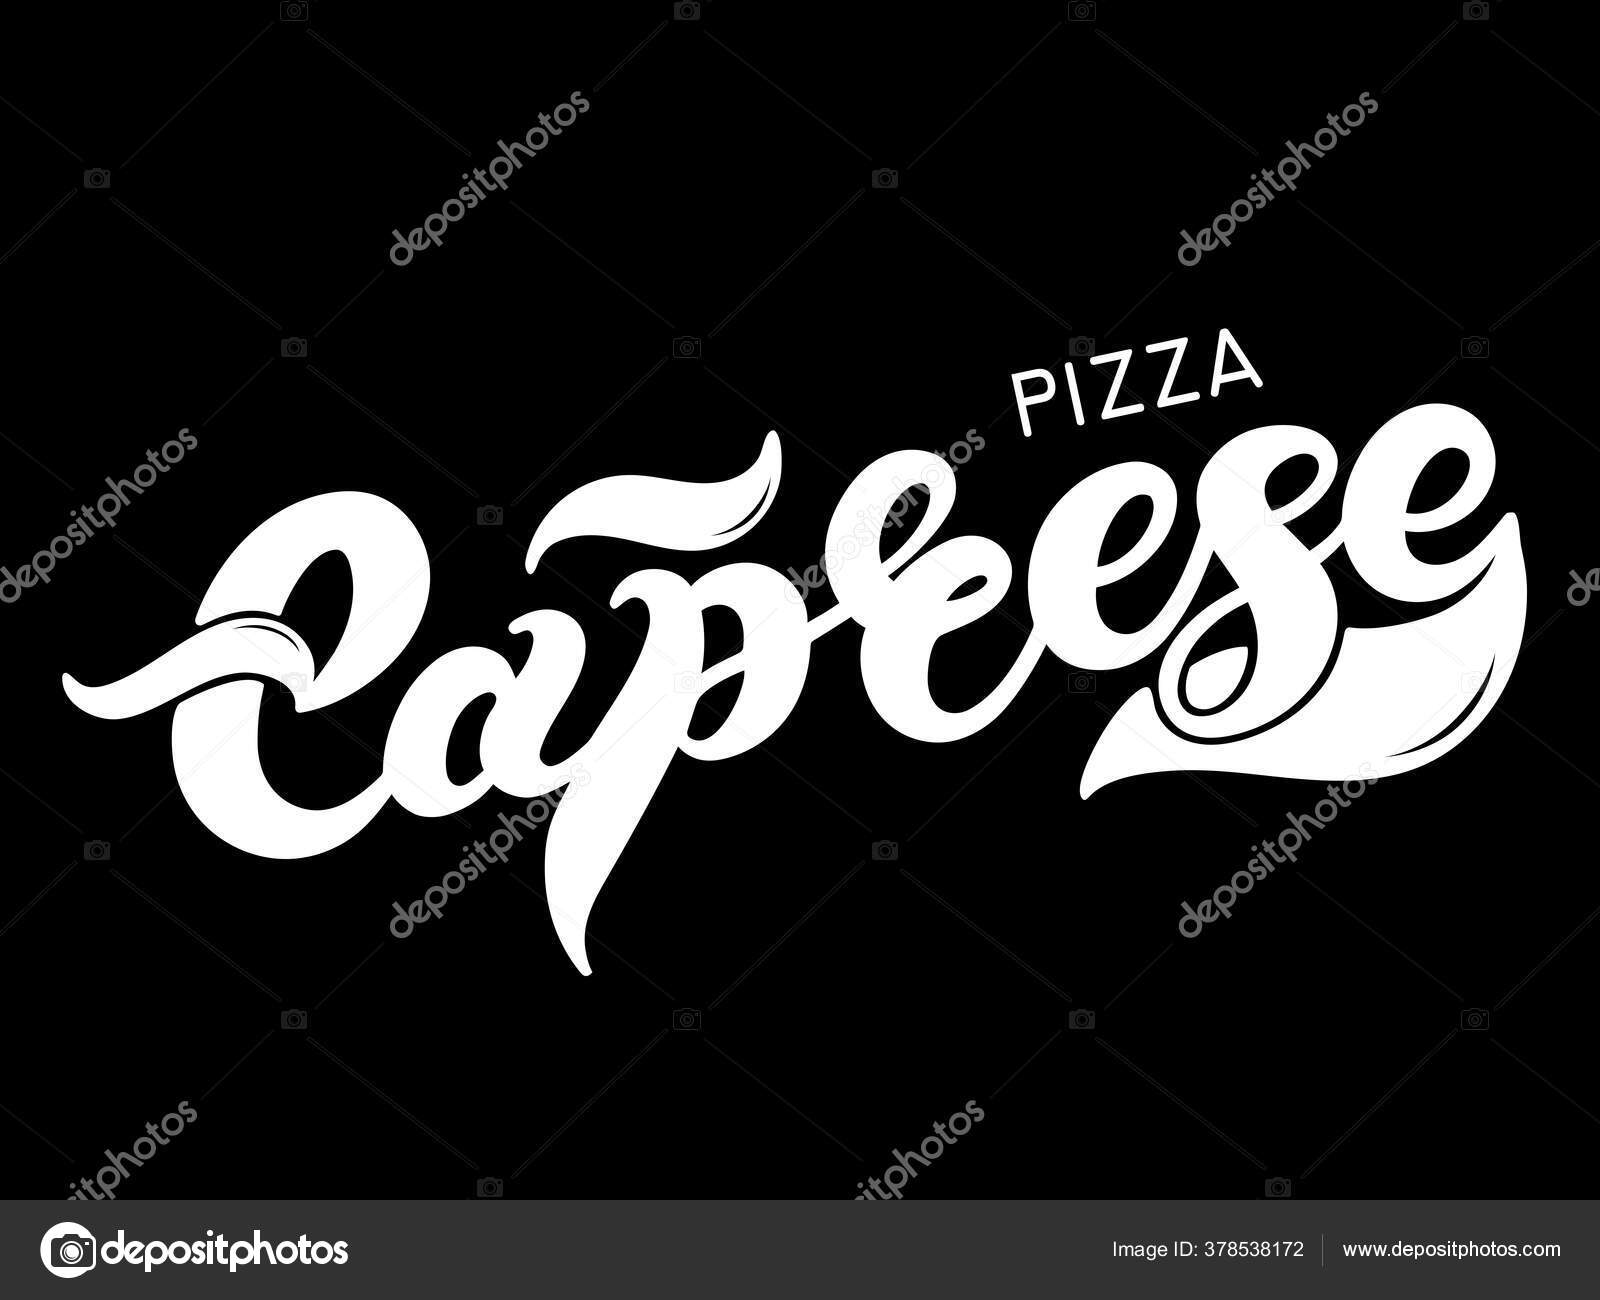 ケープレス イタリア語でピザの種類の名前 手書き文字 イラストはレストランやカフェのメニューデザインに最適です ストックベクター C Darinadreamer